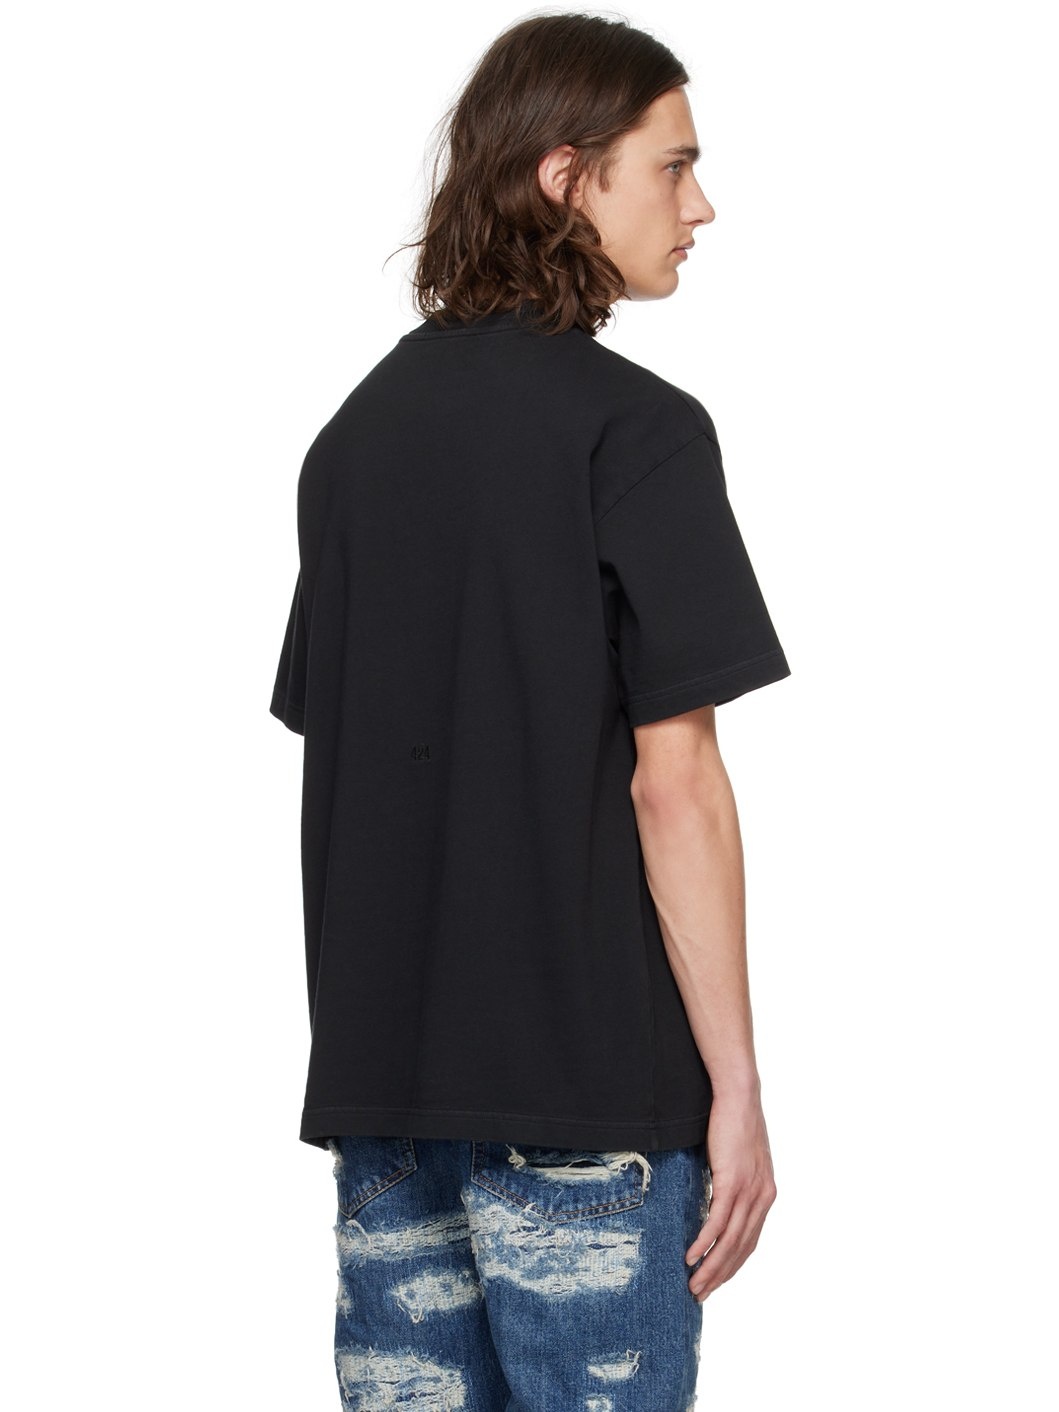 Black Alias T-Shirt - 3